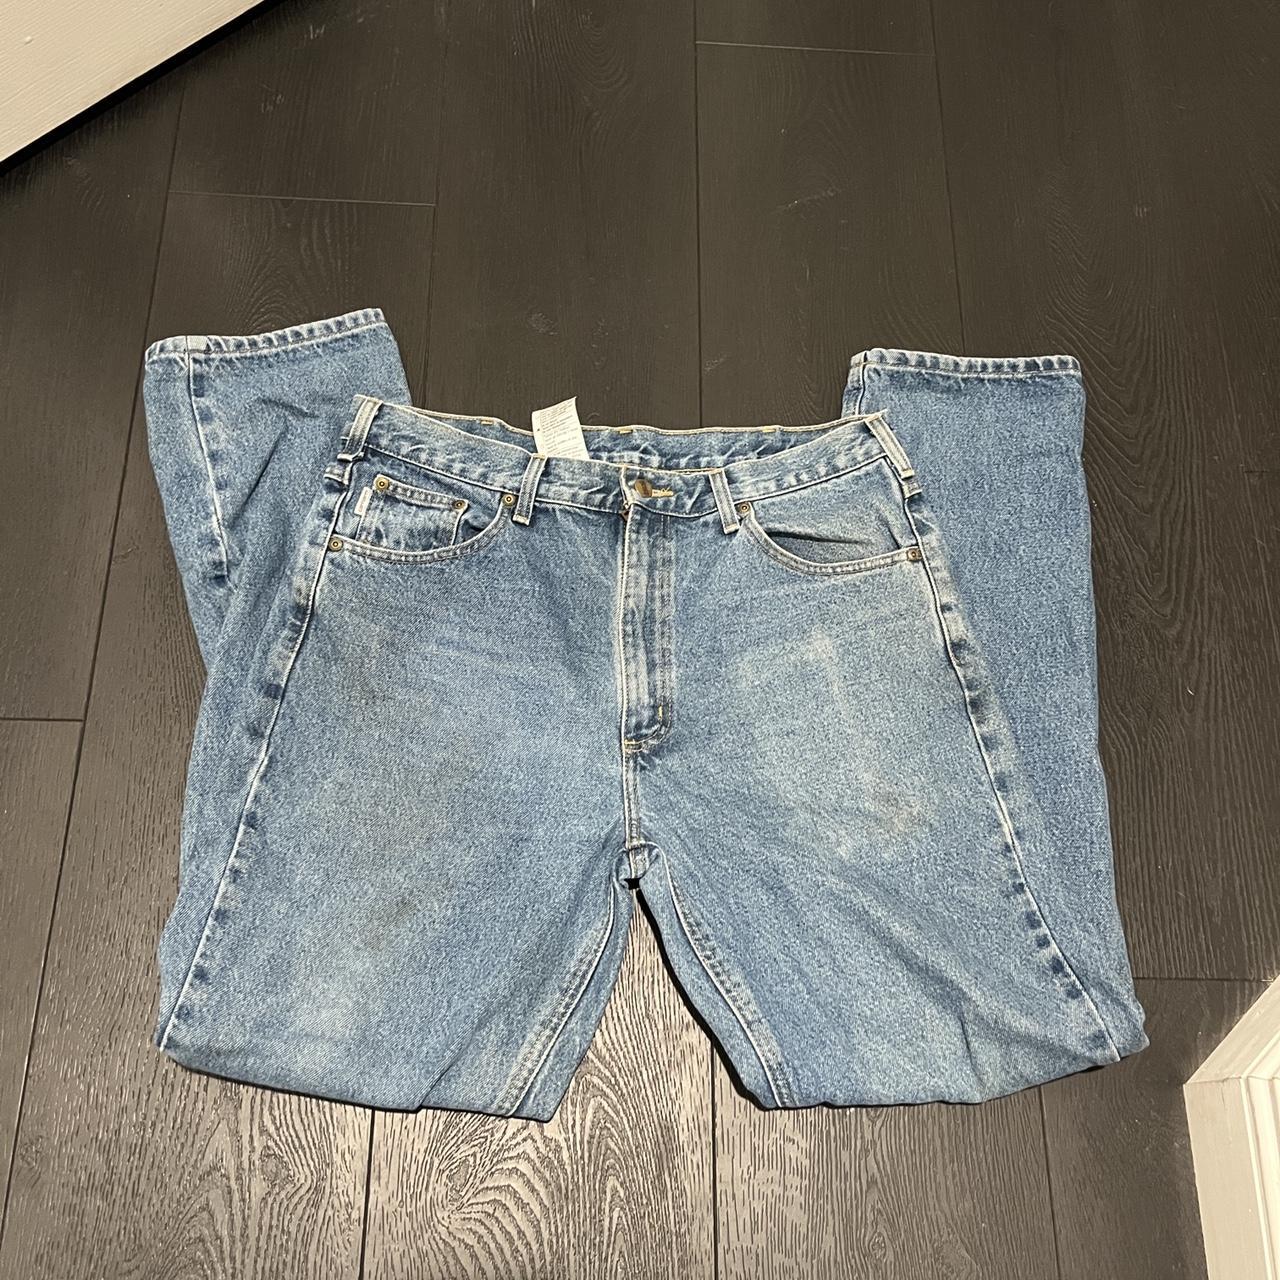 Carhartt jeans Flawing shown Size 36x34 - Depop